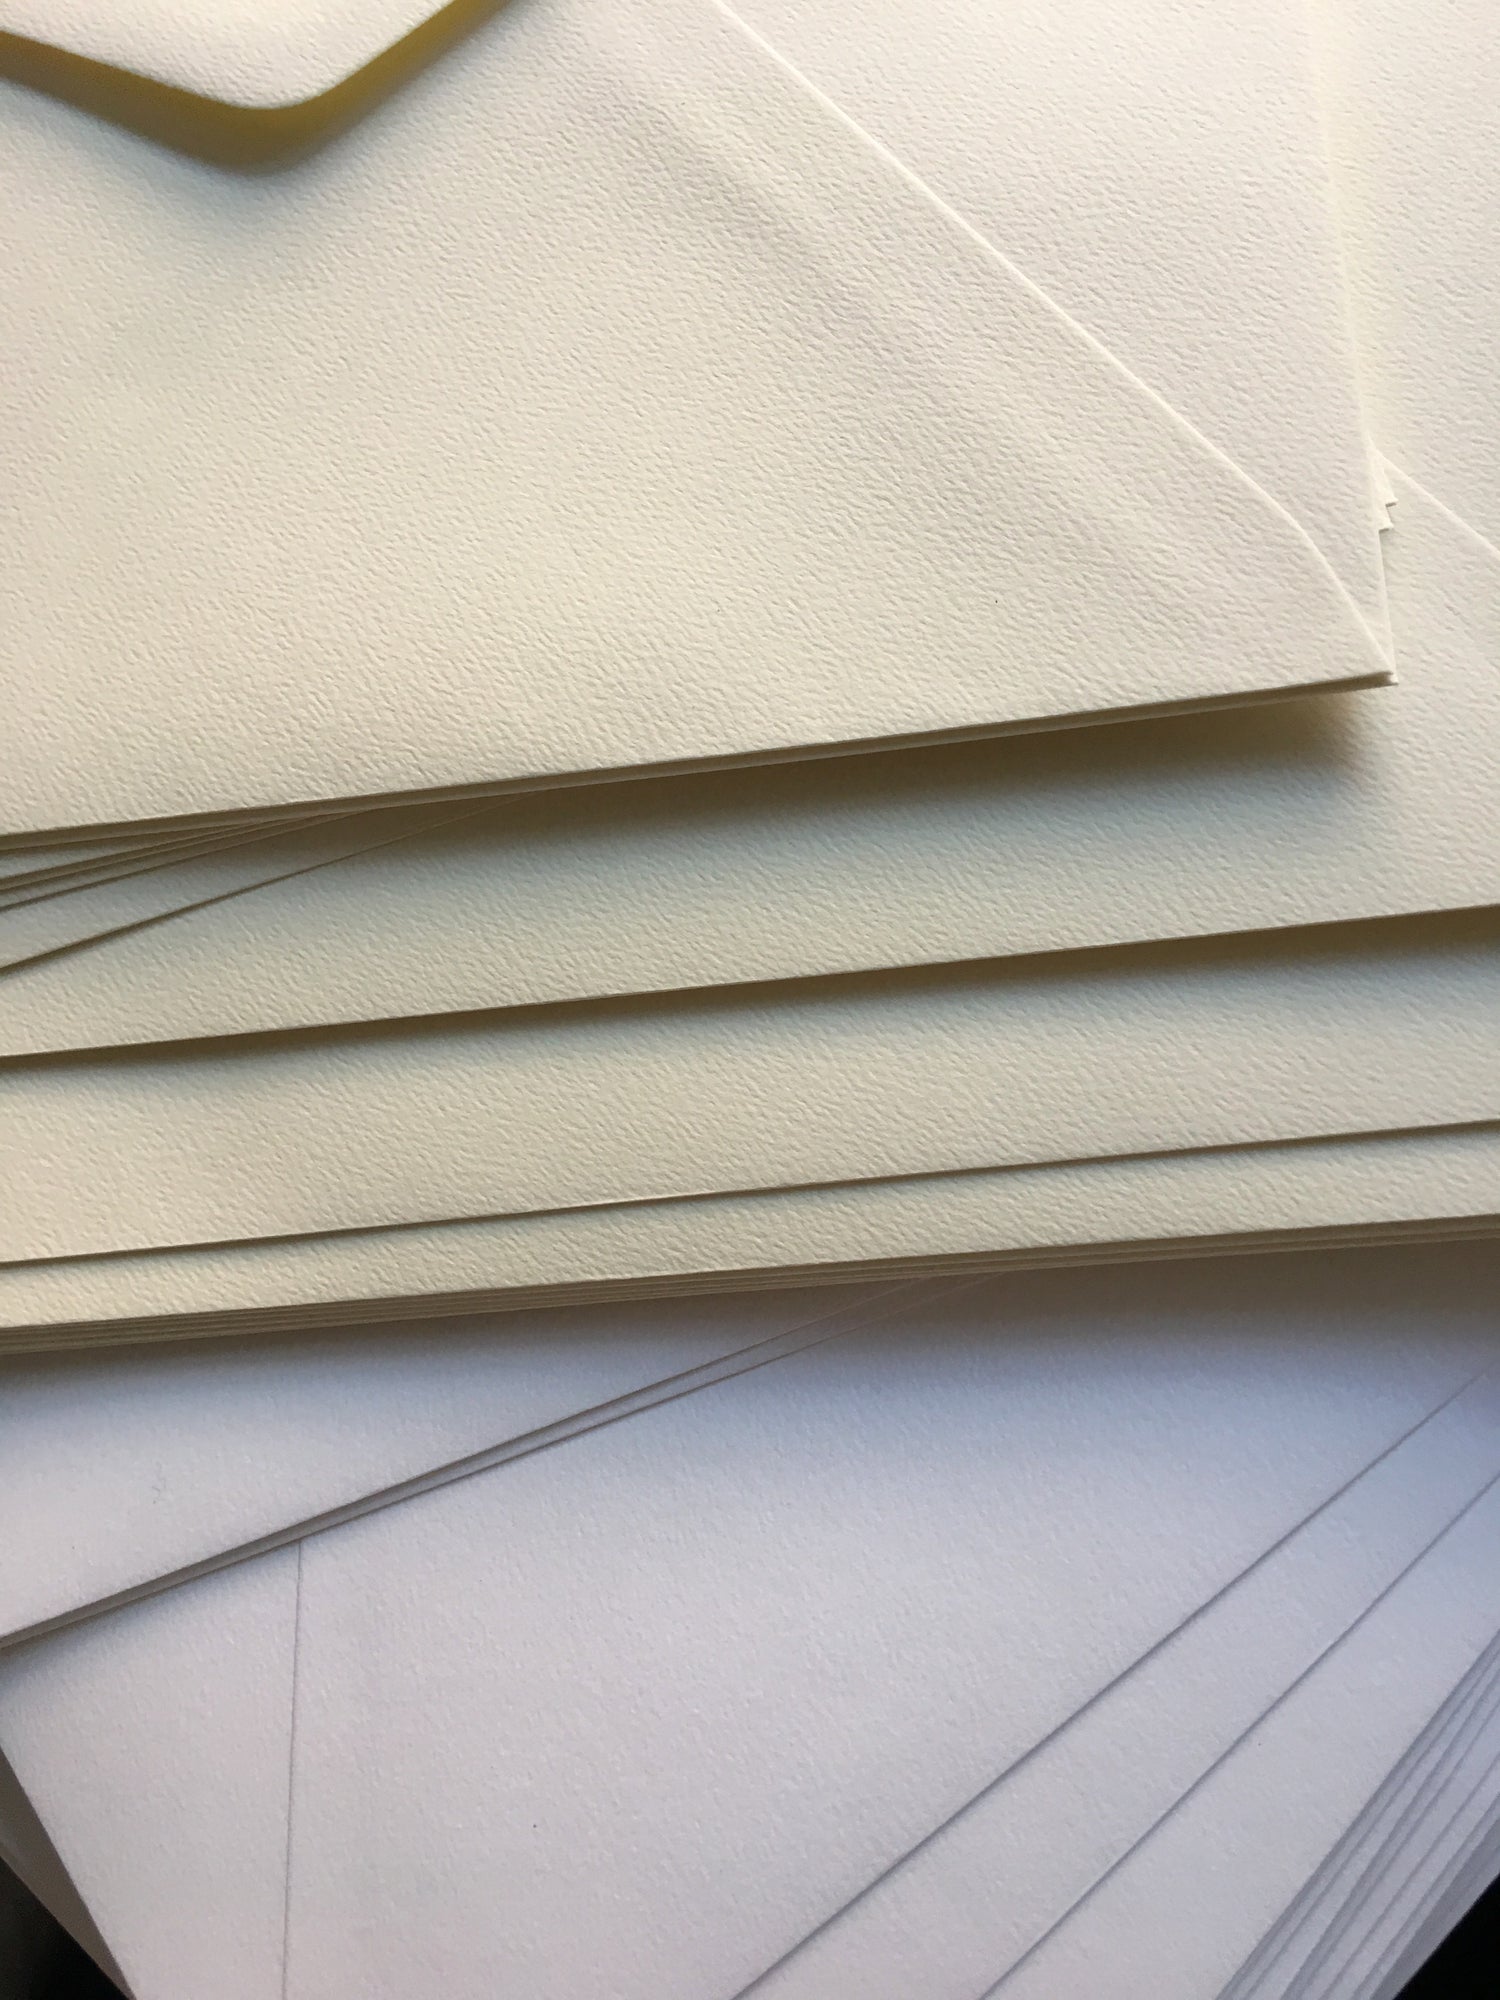 Envelopes - Smooth White or  Cream Envelopes